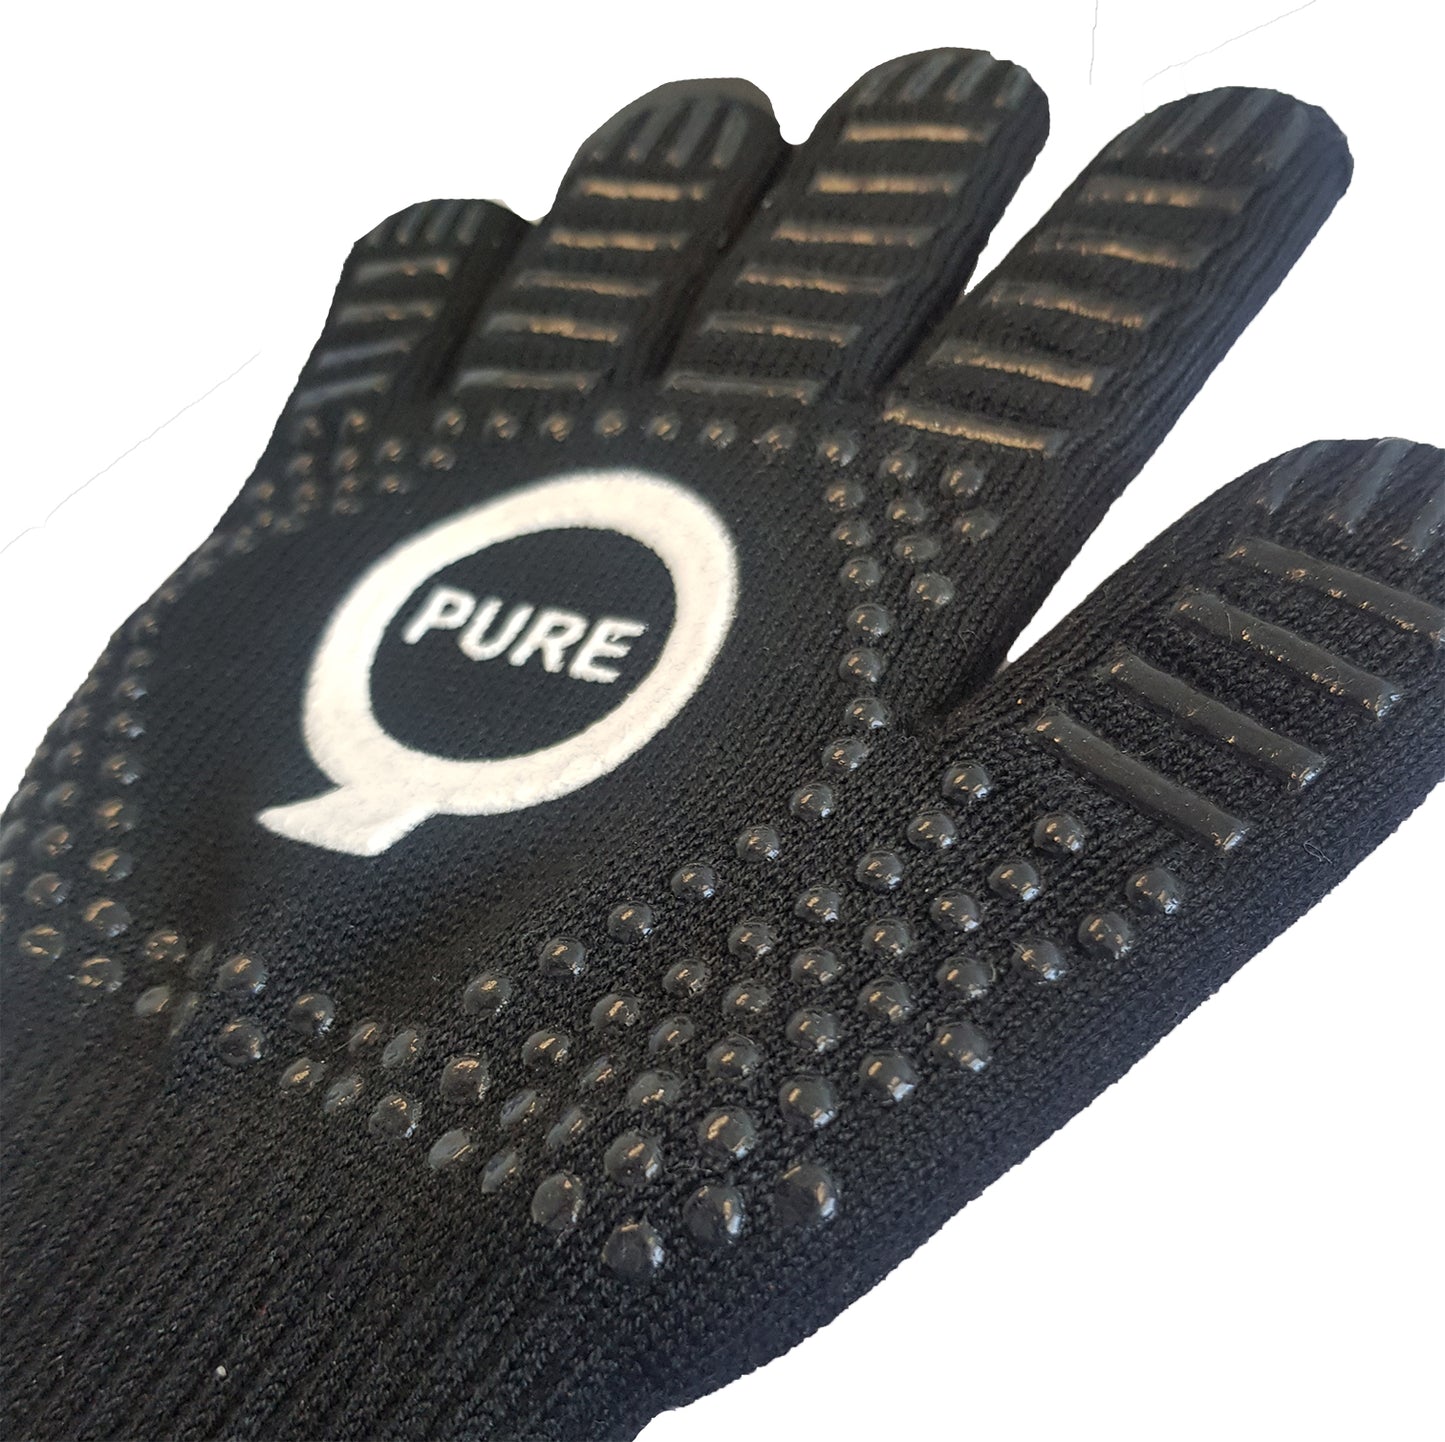 PureQ Nomex - Heat Proof BBQ Gloves